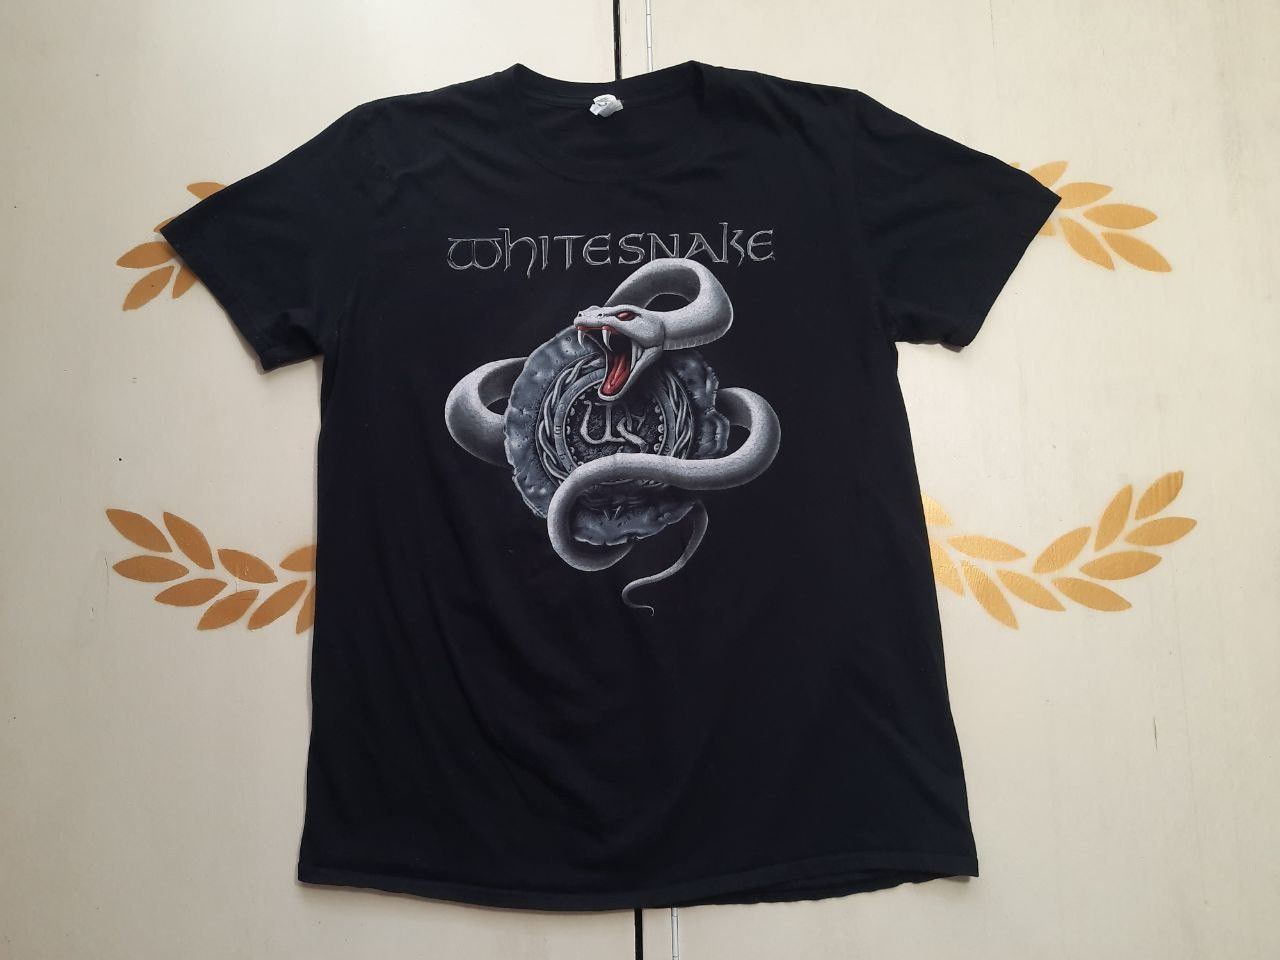 Gildan Gildan WhiteSnake The Purple Tour 2015 T-Shirt | Grailed